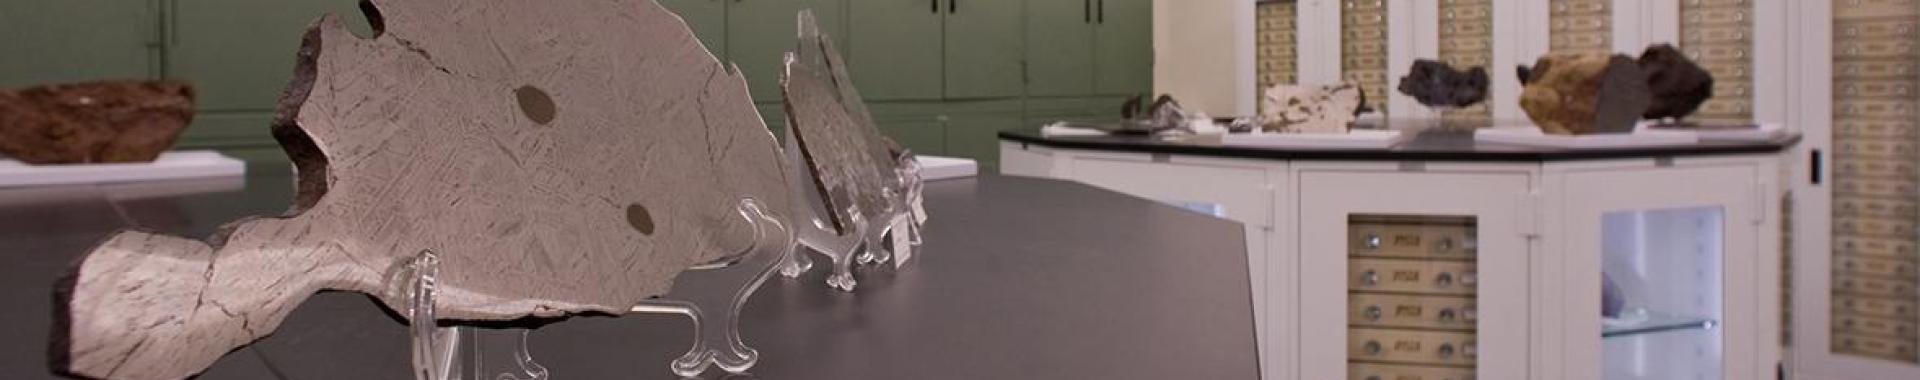 Meteorites on display and in storage at ASU's meteorite vault.